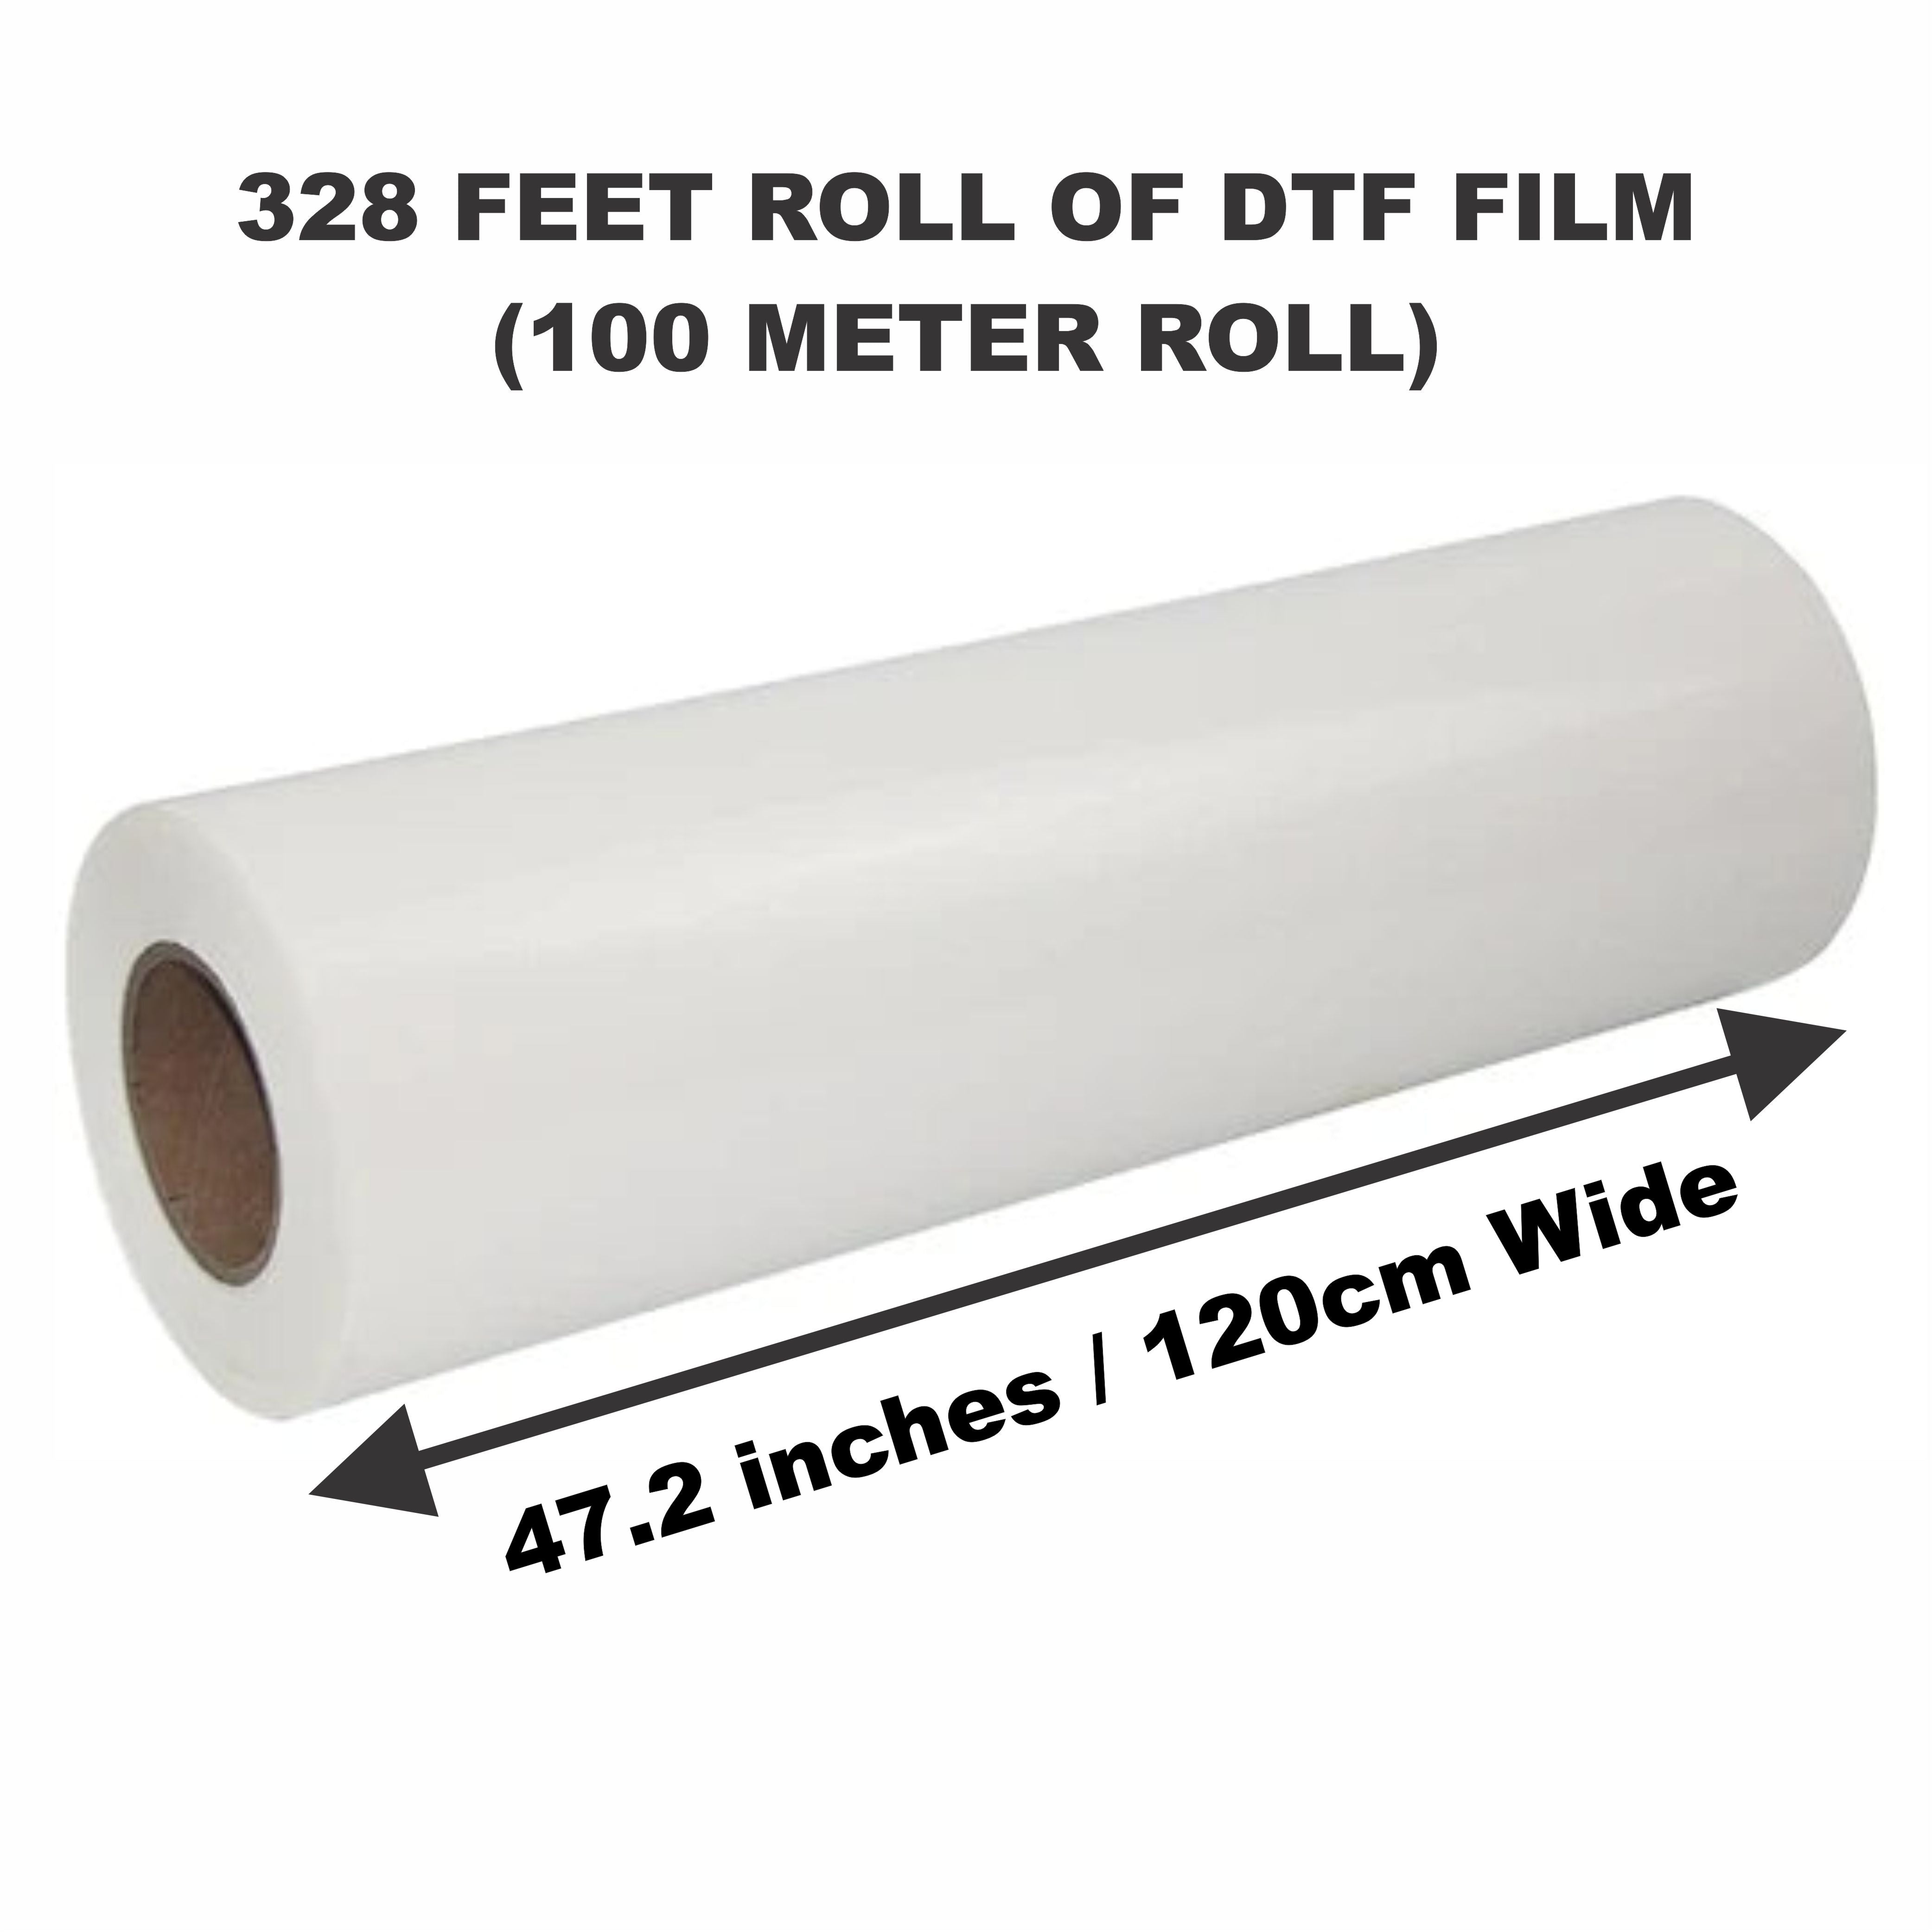 60cm Width Easy To Peel PET DTF Transfer Film Heat Transfer